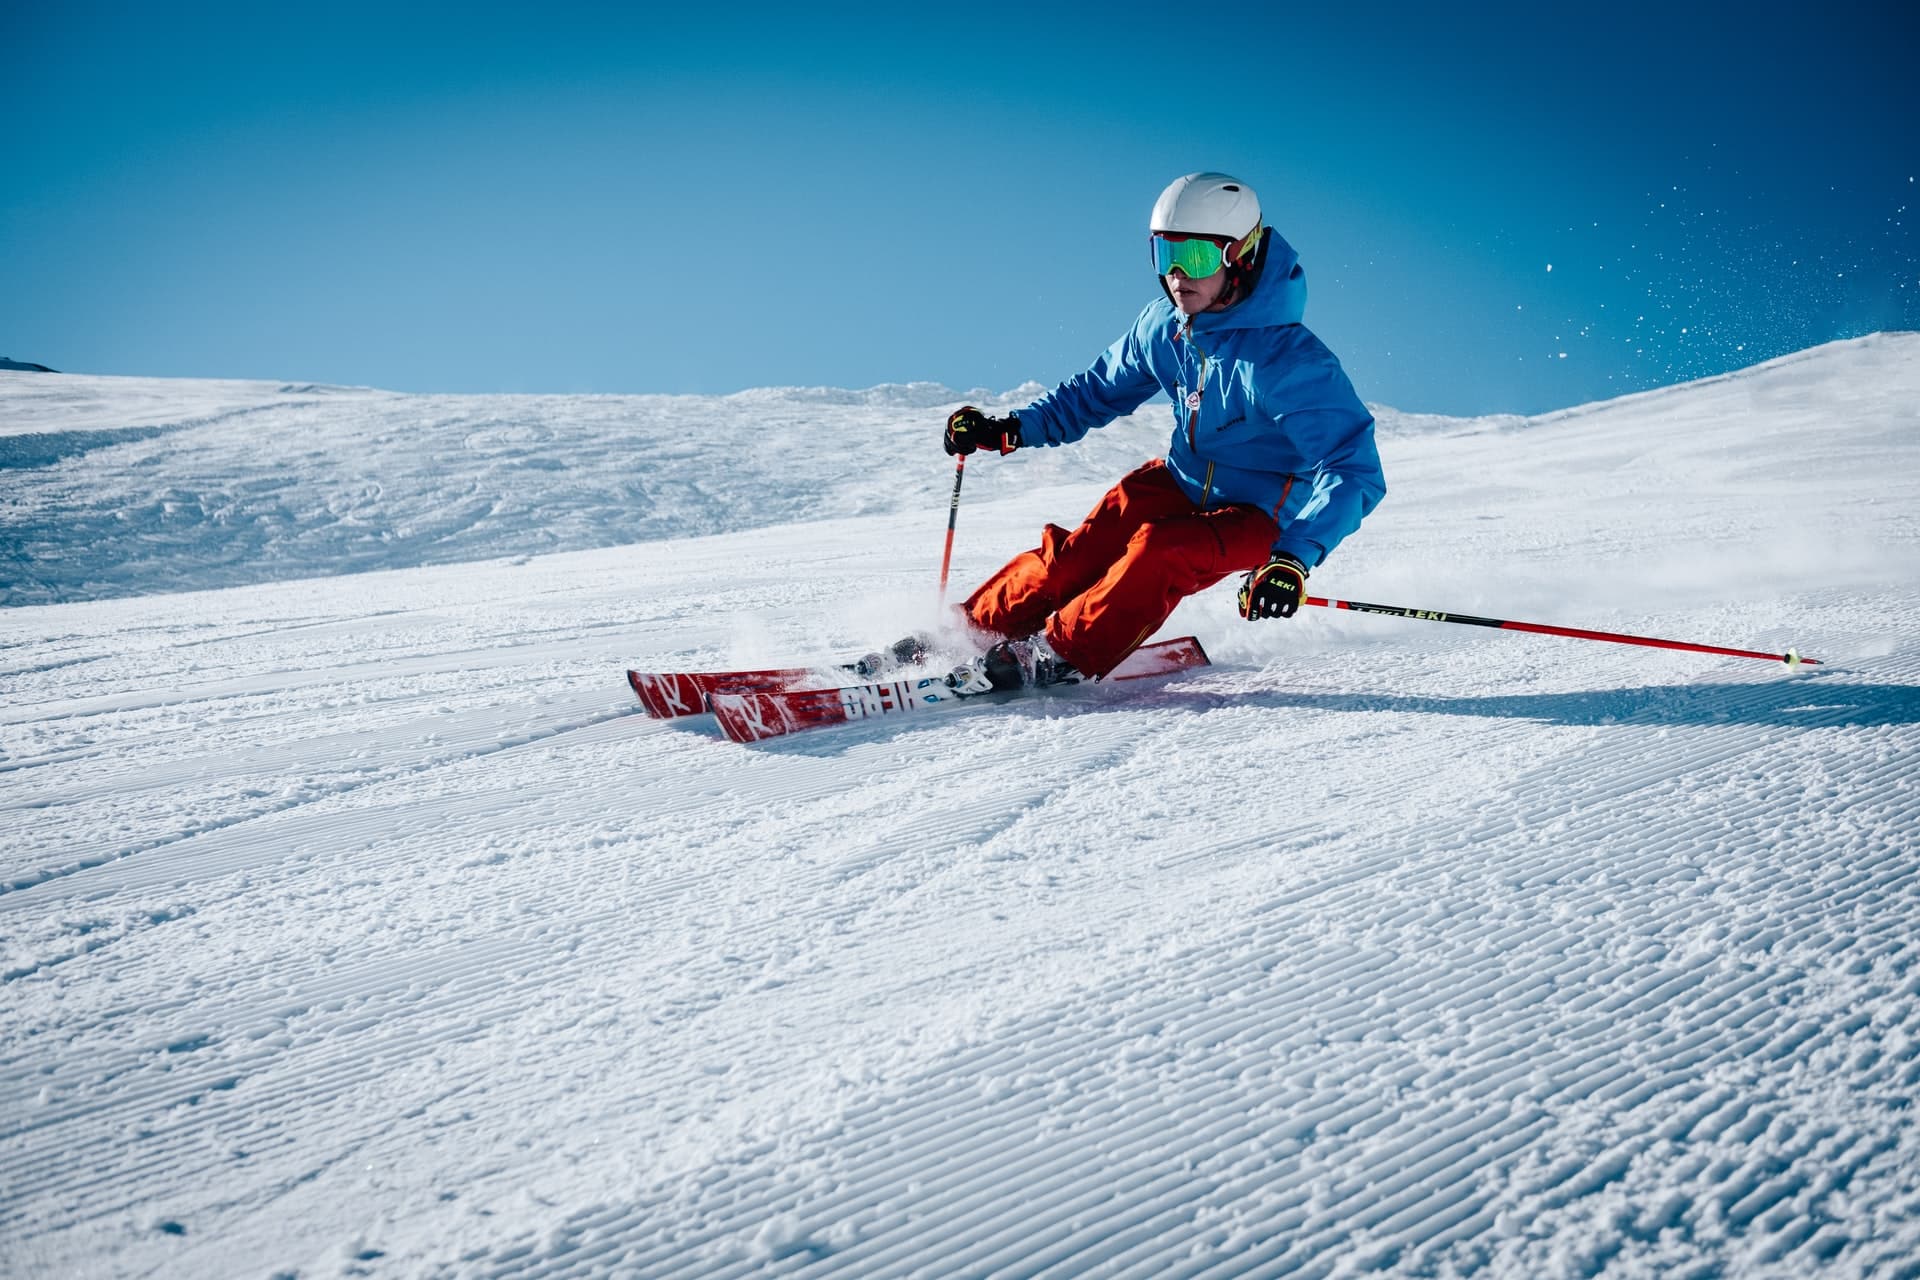 Quelle station de ski familiale dans les Alpes ?